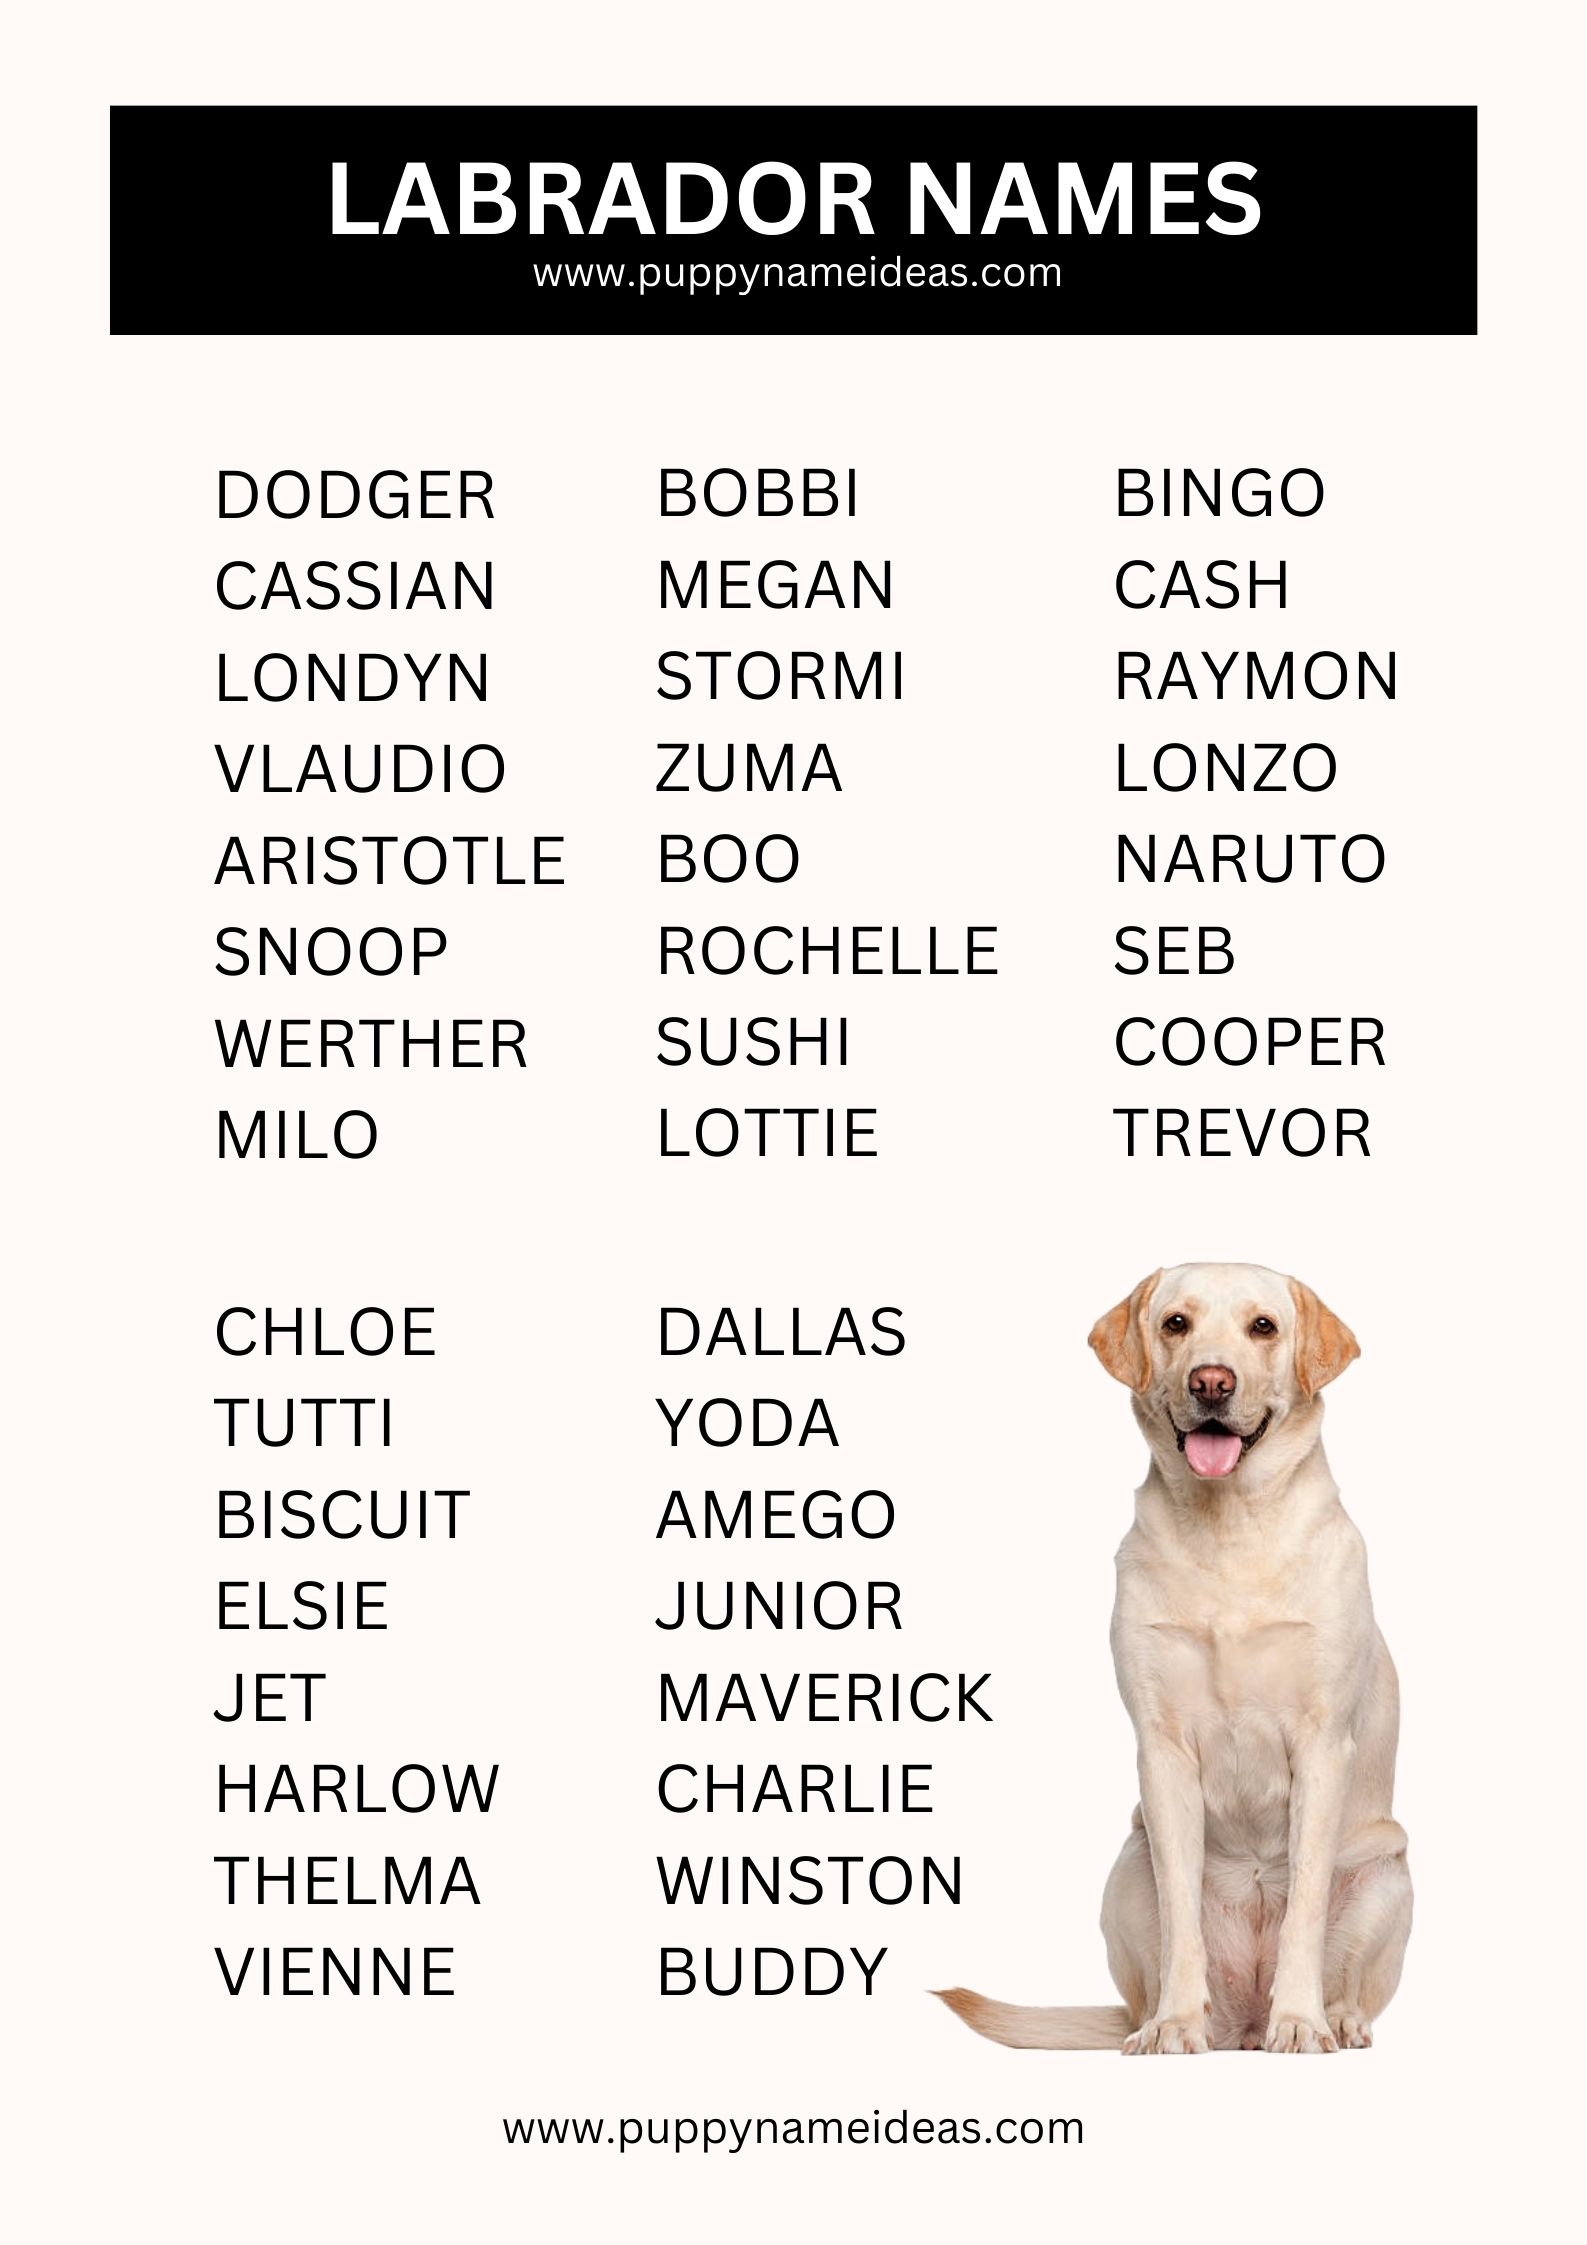 List Of Labrador Names